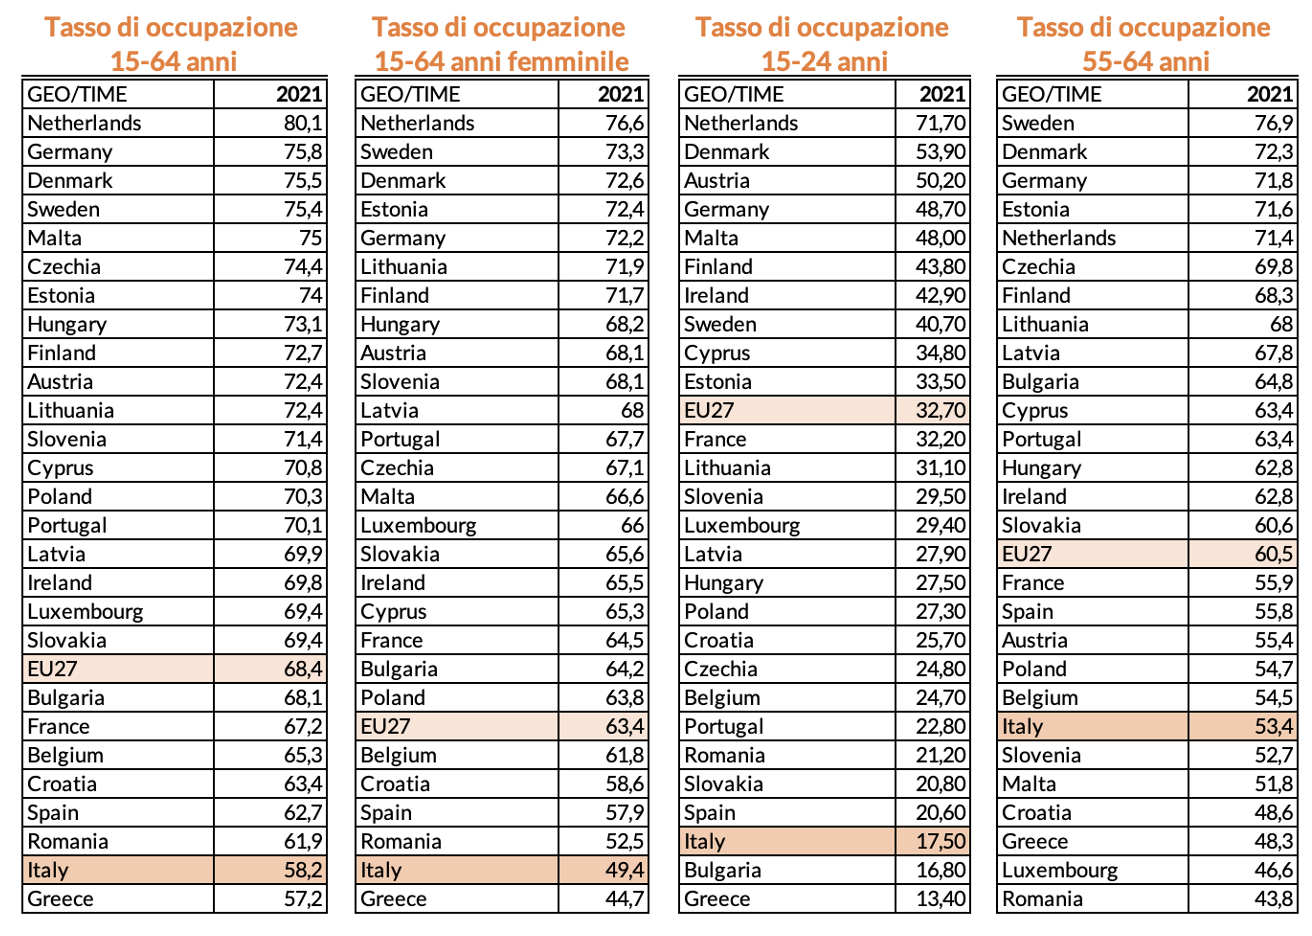 Tabella 1 – Tassi di occupazione a confronto: Italia vs Paesi UE, 2021